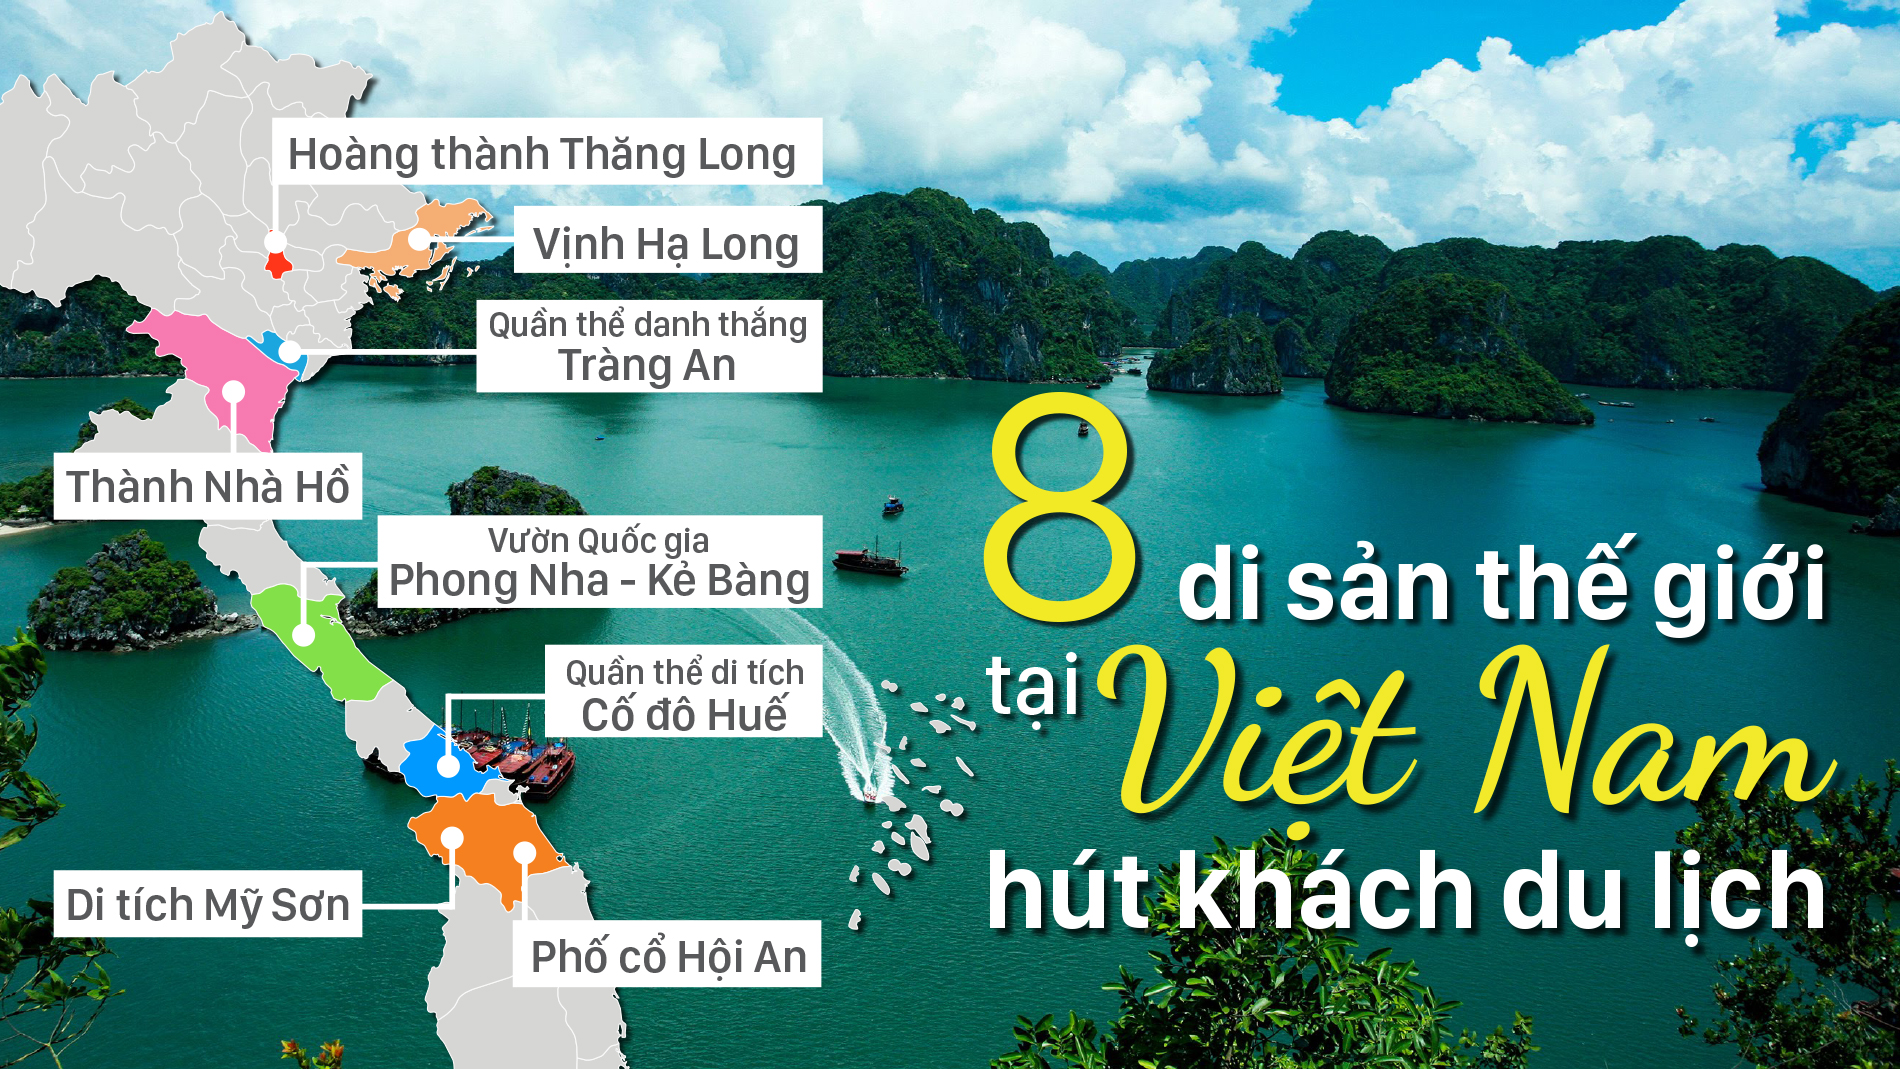 8 di sản thế giới tại Việt Nam hút khách du lịch